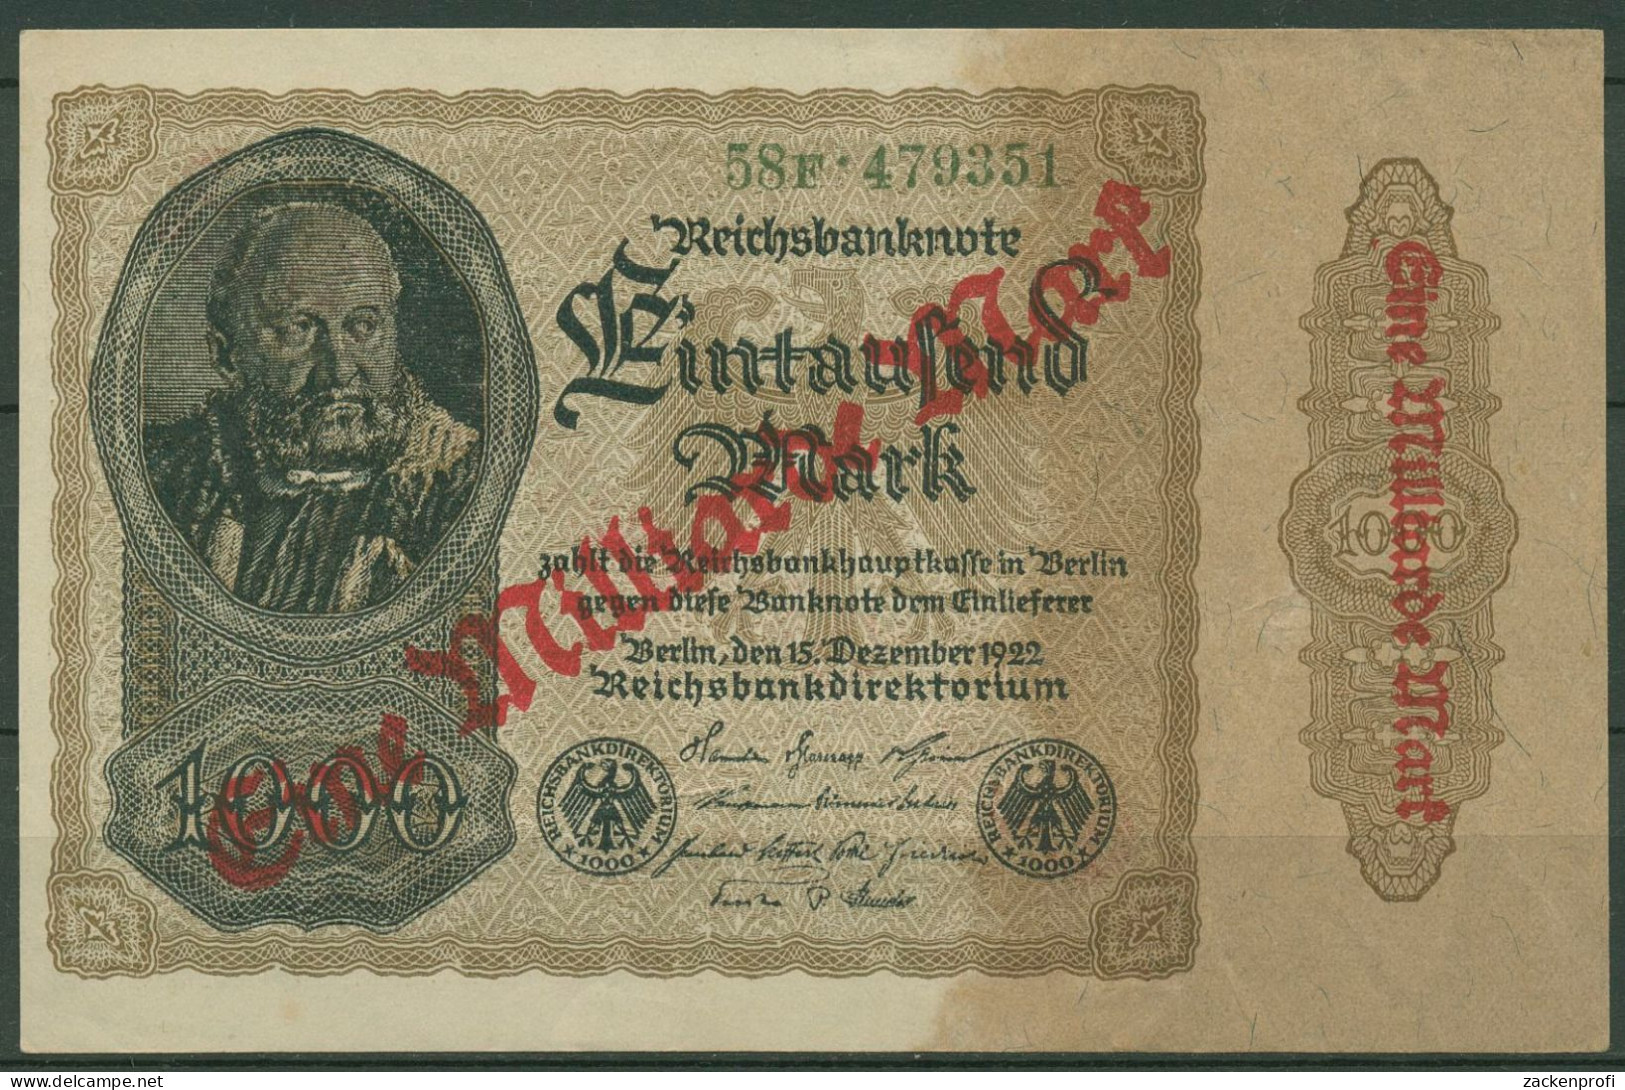 Dt. Reich 1 Milliarde Mark 1923, DEU-126b FZ F, Leicht Gebraucht (K1155) - 1 Miljard Mark